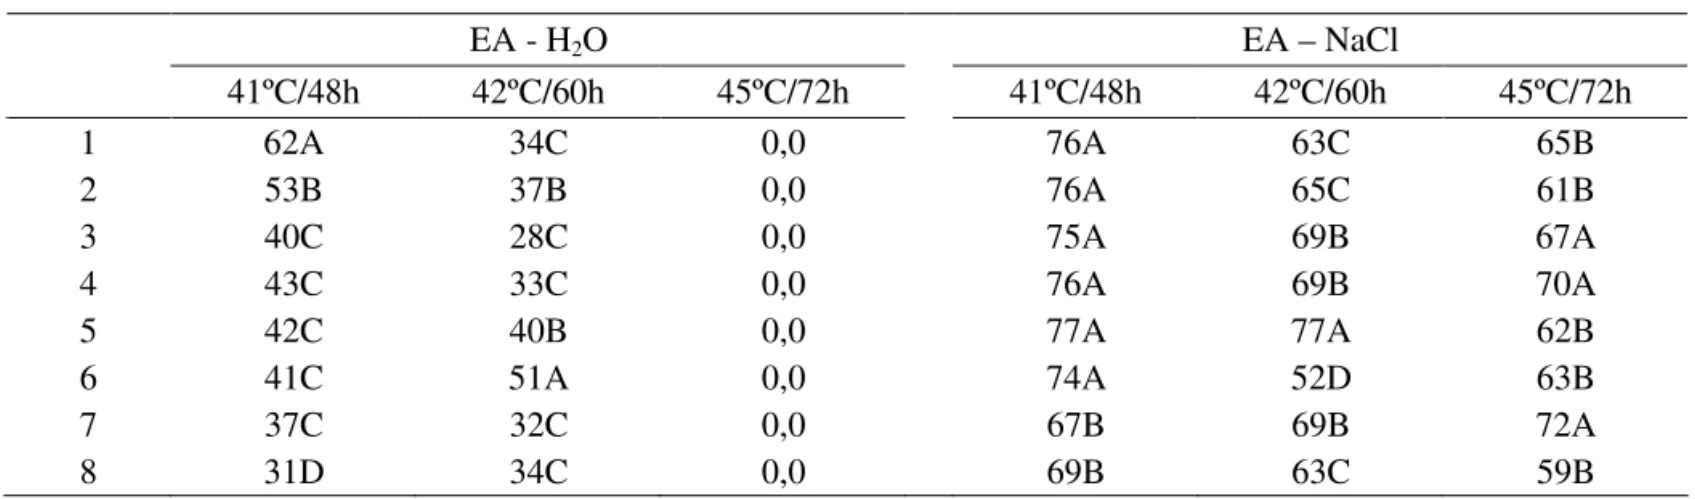 TABELA 5.  Porcentagem de germinação de oito lotes de sementes após envelhecimento acelerado (EA) com H 2 O e  solução saturada de NaCl, em três combinações de temperatura e períodos de exposição.